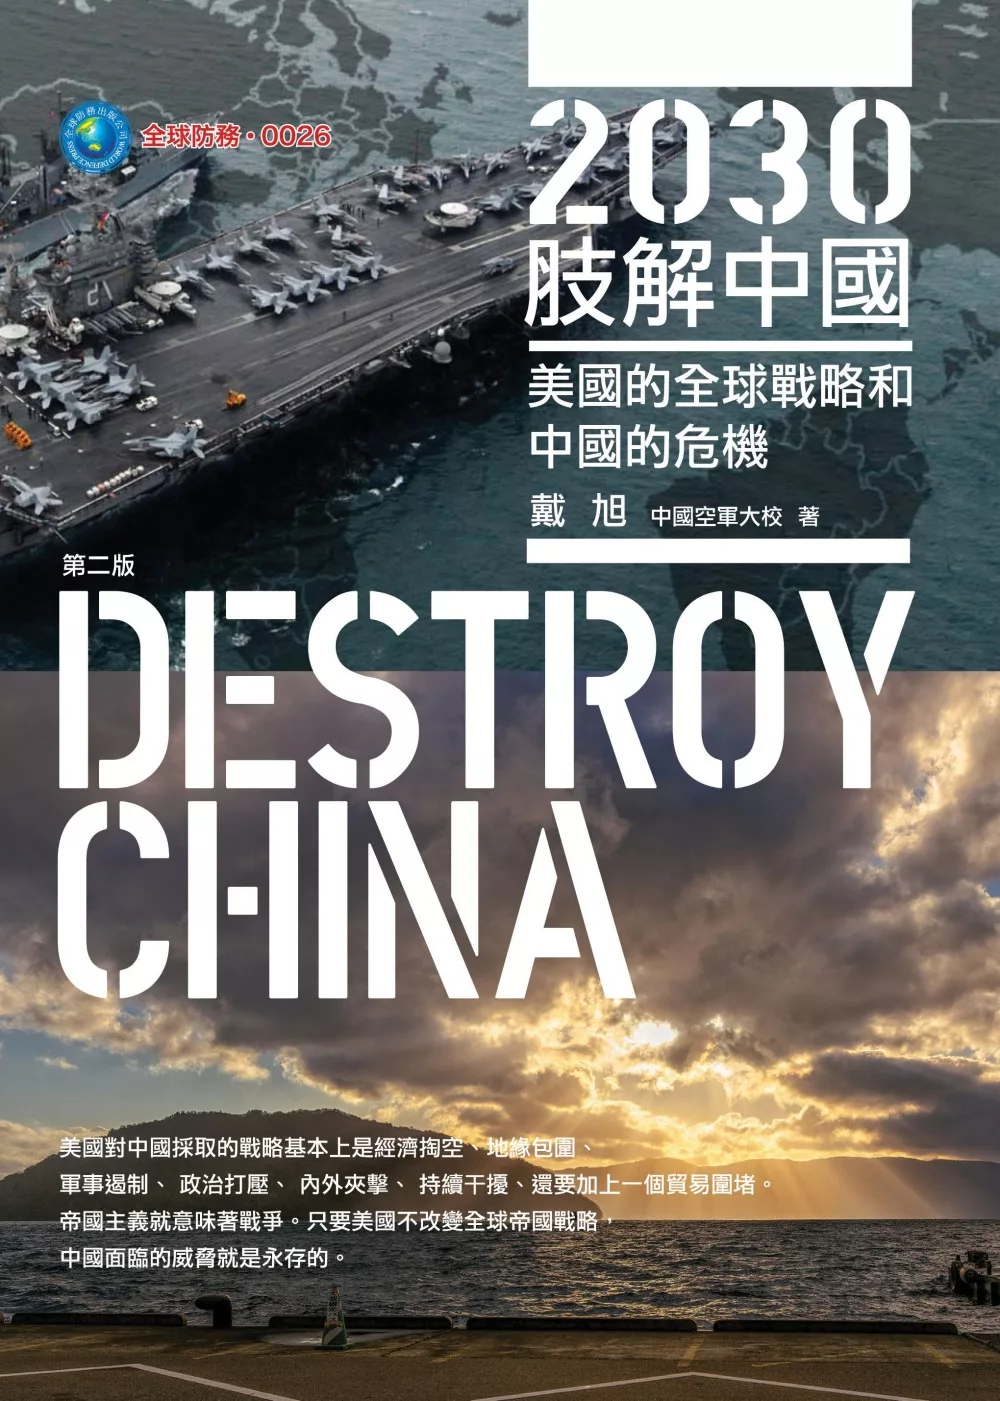 2030肢解中國：美國的全球戰略和中國的危機